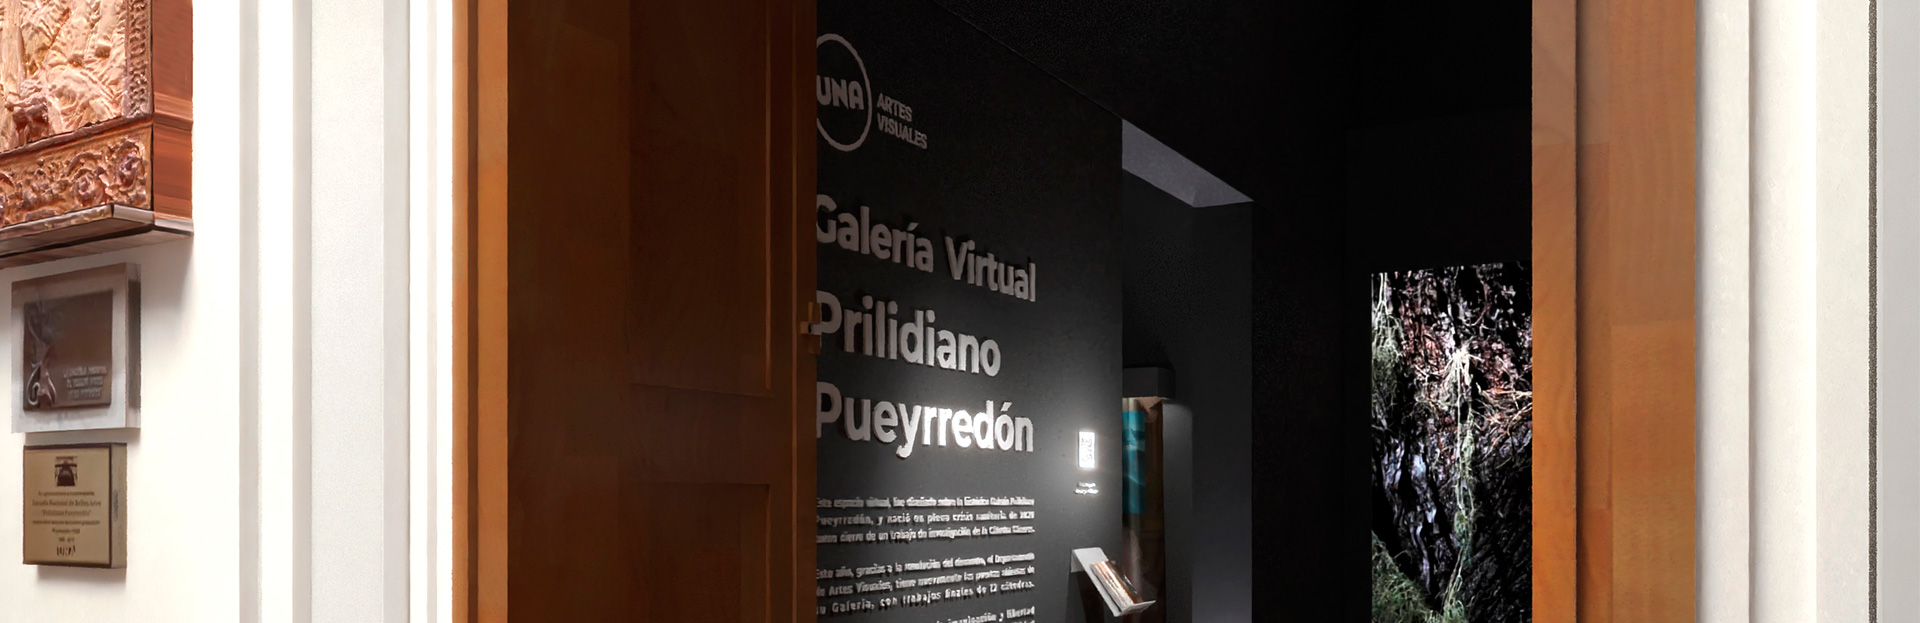 Visitá la Galería Virtual Prilidiano Pueyrredón